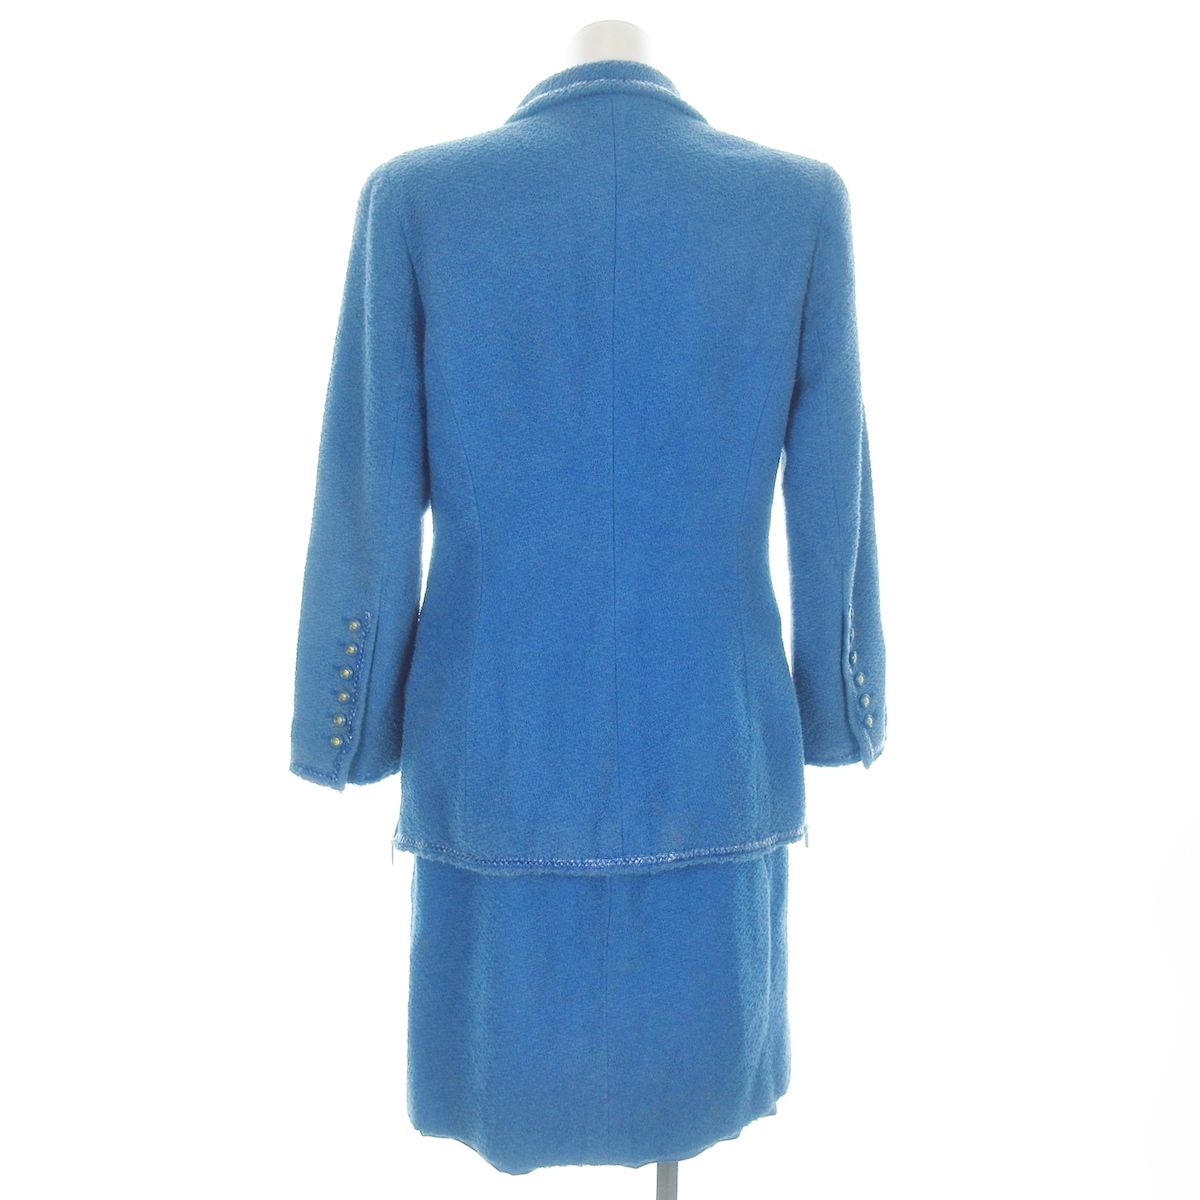 CHANEL(シャネル) スカートスーツ サイズ42 L レディース サマーツイード/パイル PO5125 ブルー ジップアップ/肩パッド 綿、ウール